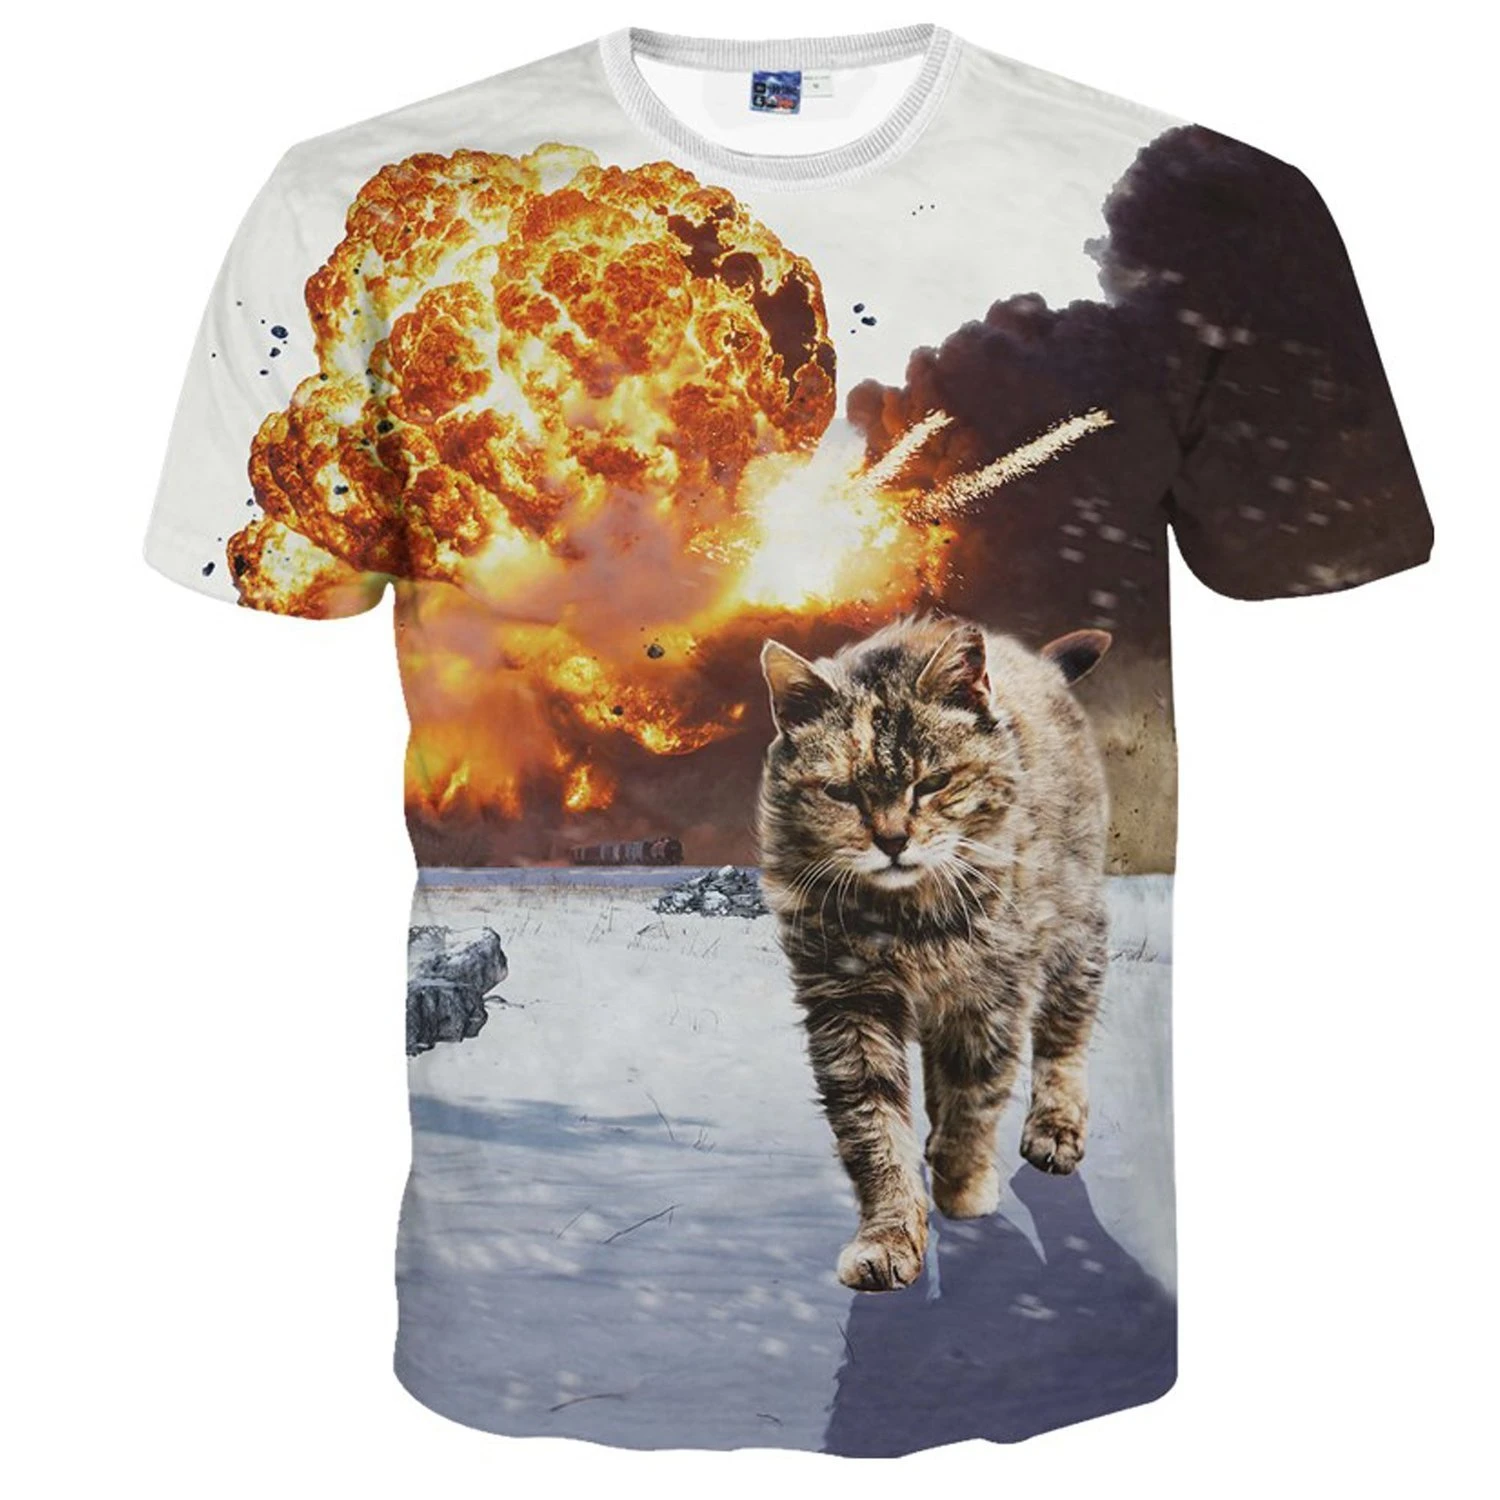 猫×宇宙!? Amazonで買えるブッ飛んだ猫Tシャツの勢いがヤバい